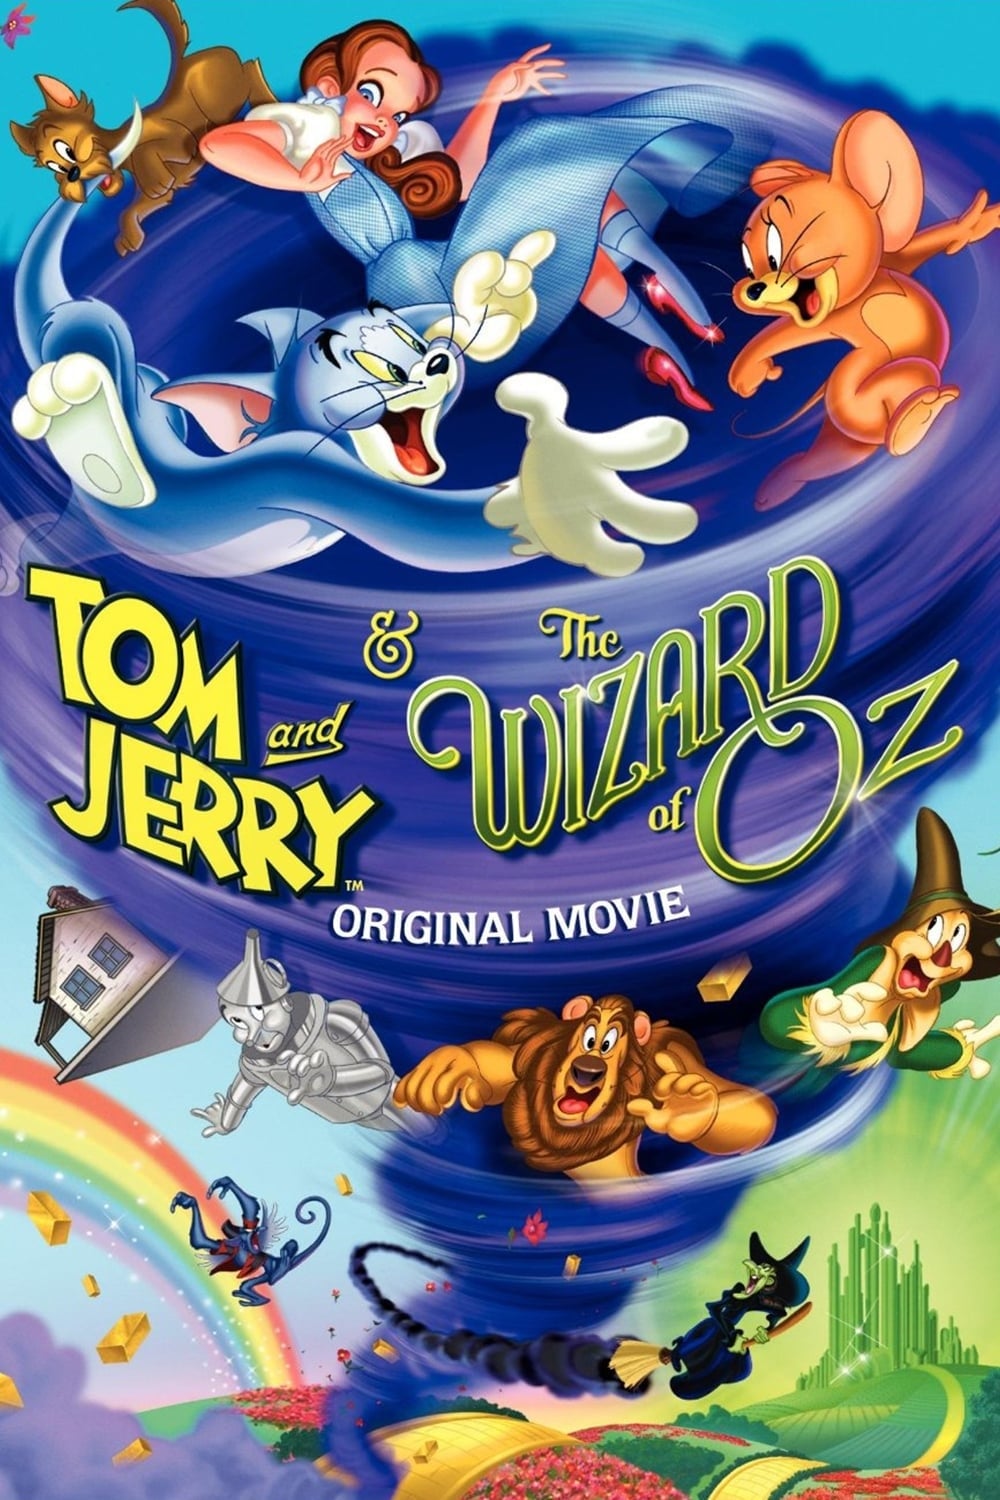 Tom & Jerry: O Mágico de Oz